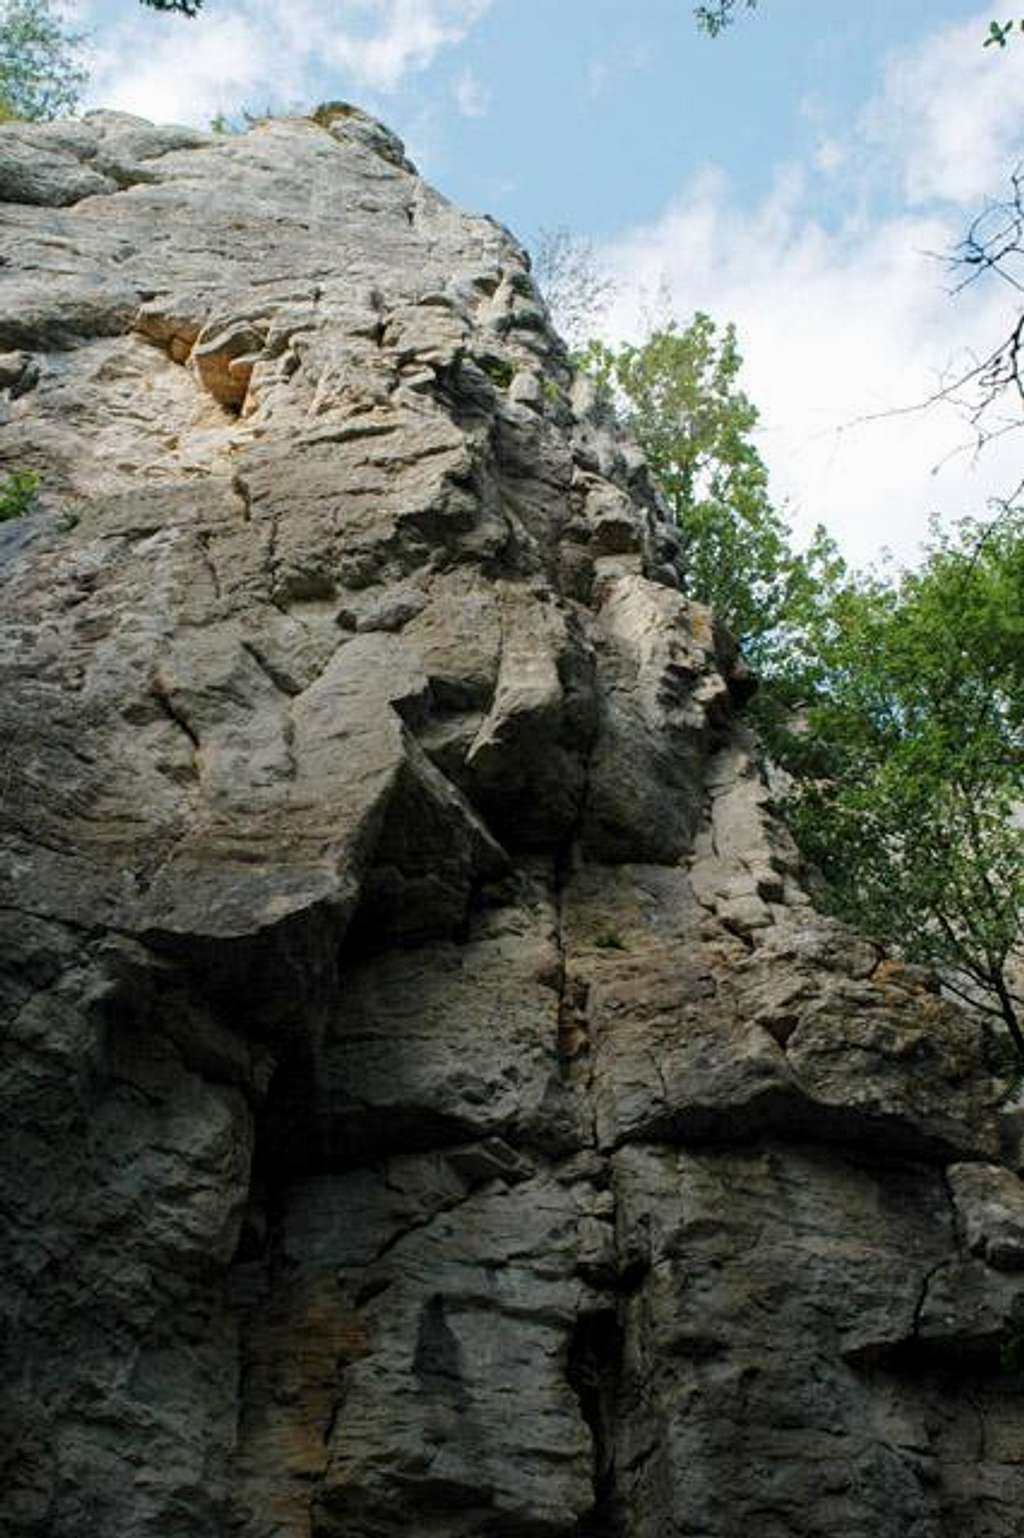 Saffres cliff